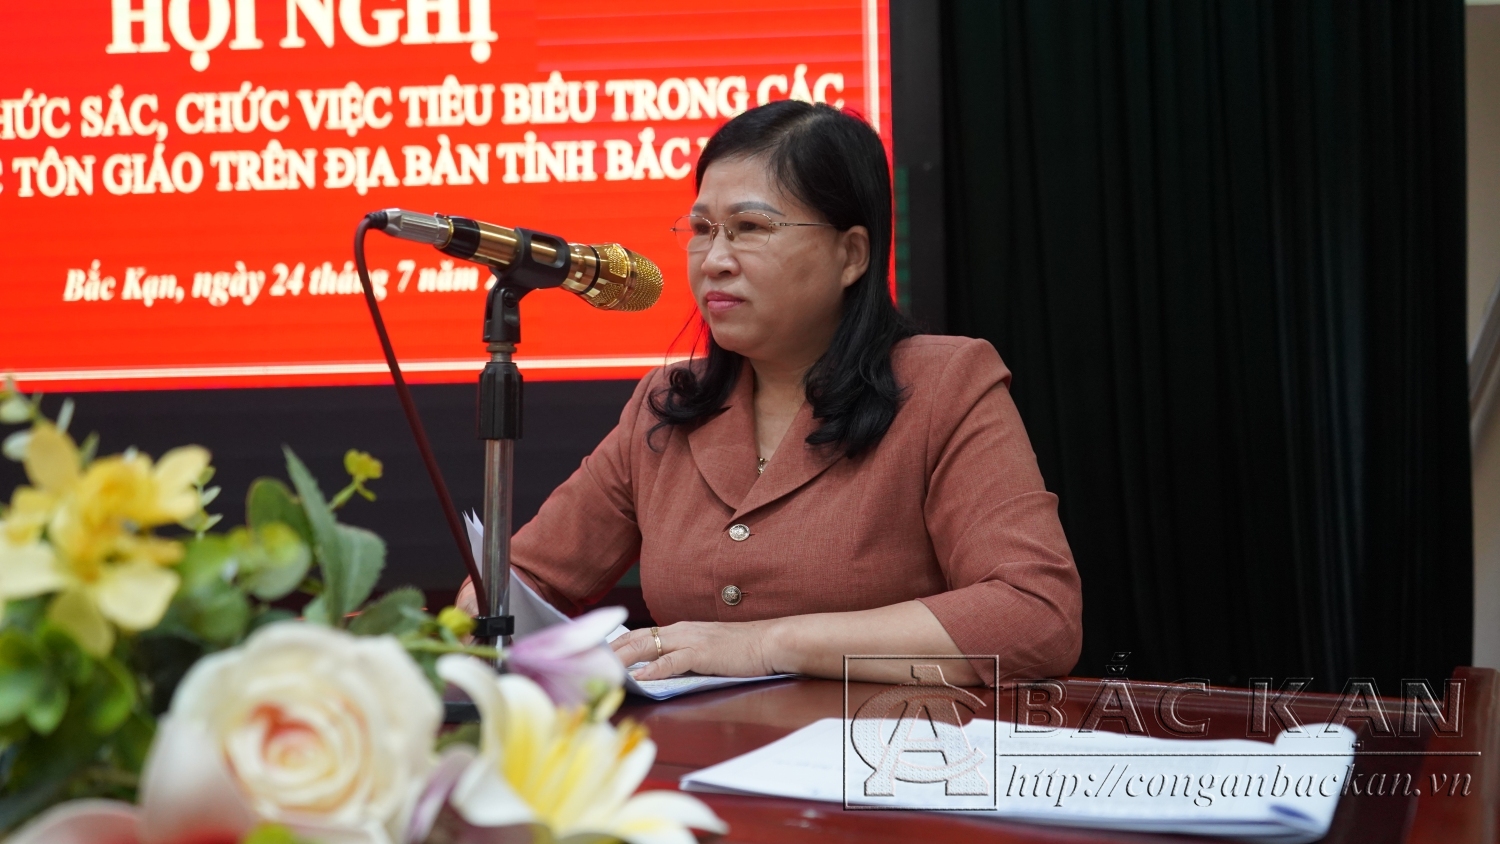 Đồng chí Phương Thị Thanh – Phó Bí thư thường trực tỉnh uỷ phát biểu tại hội nghị